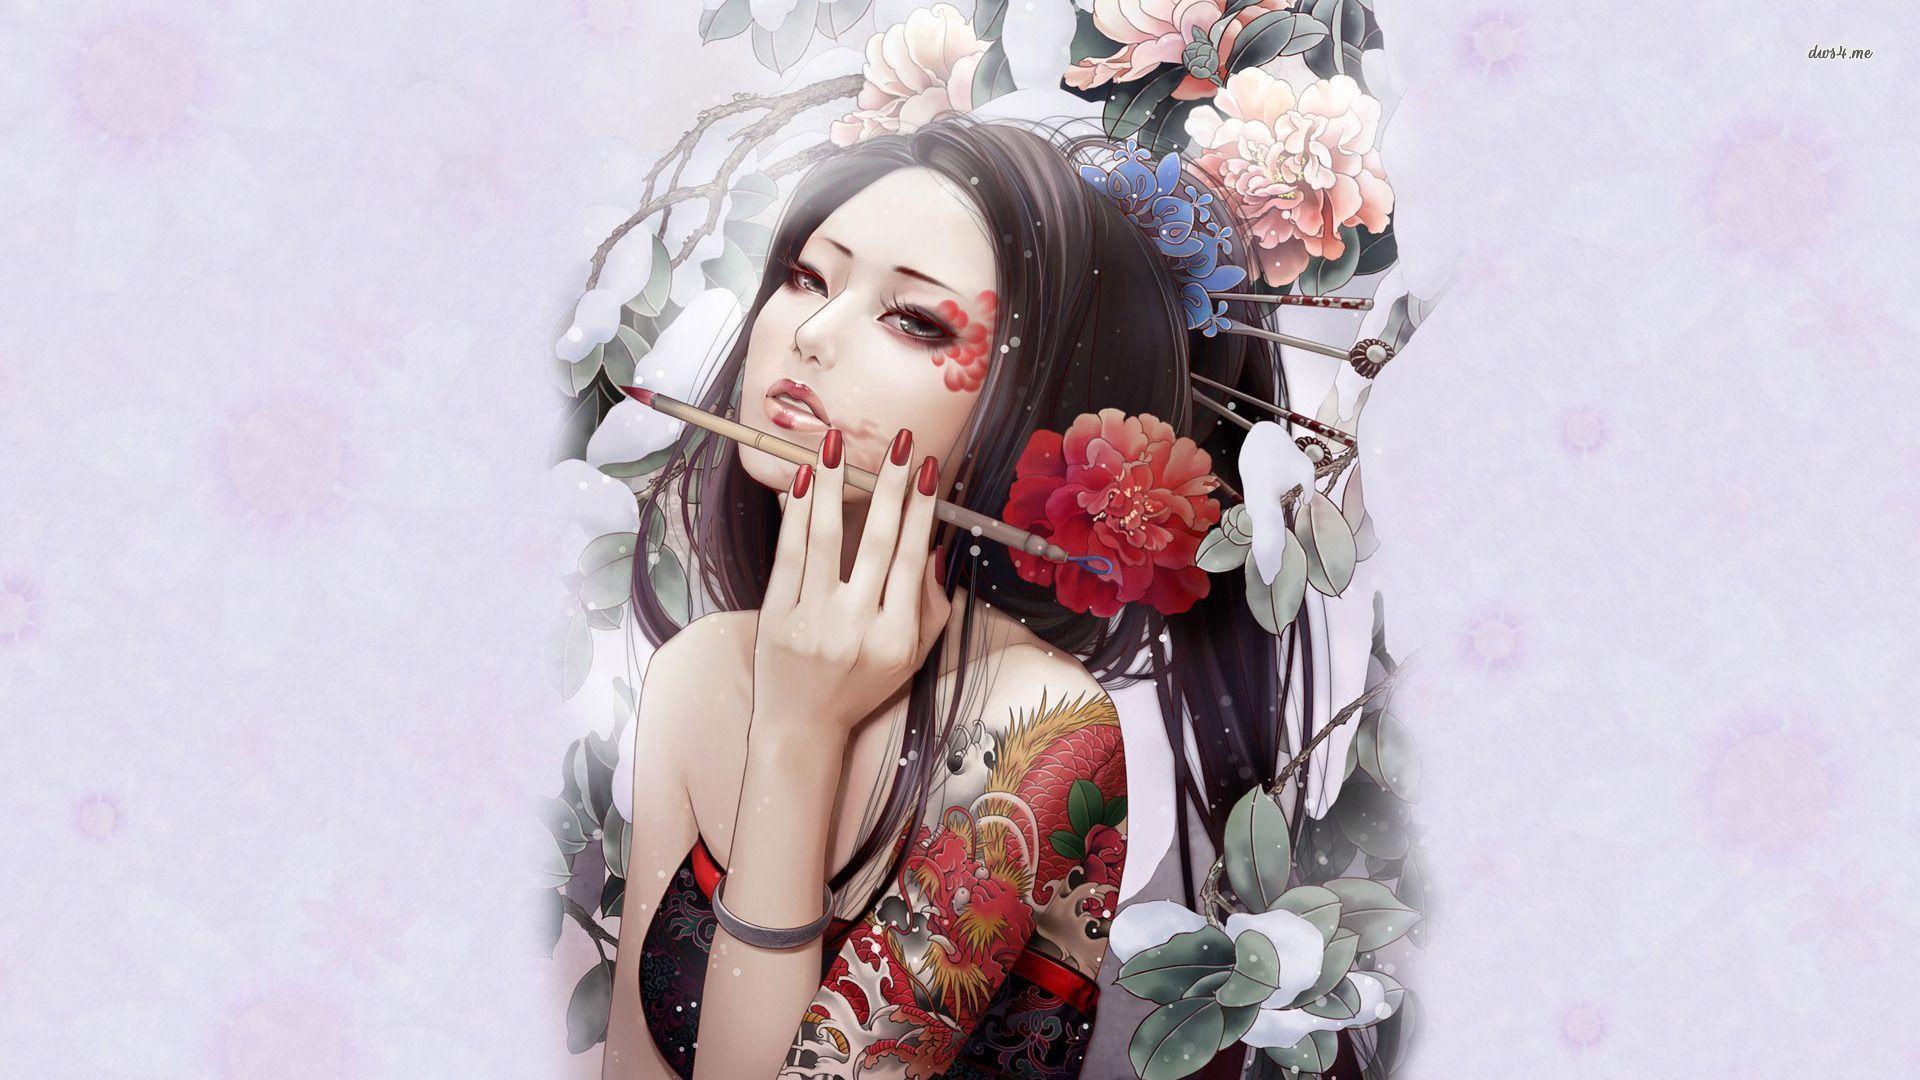 Artistic Geisha Wallpaper Wallpaper. wallvan